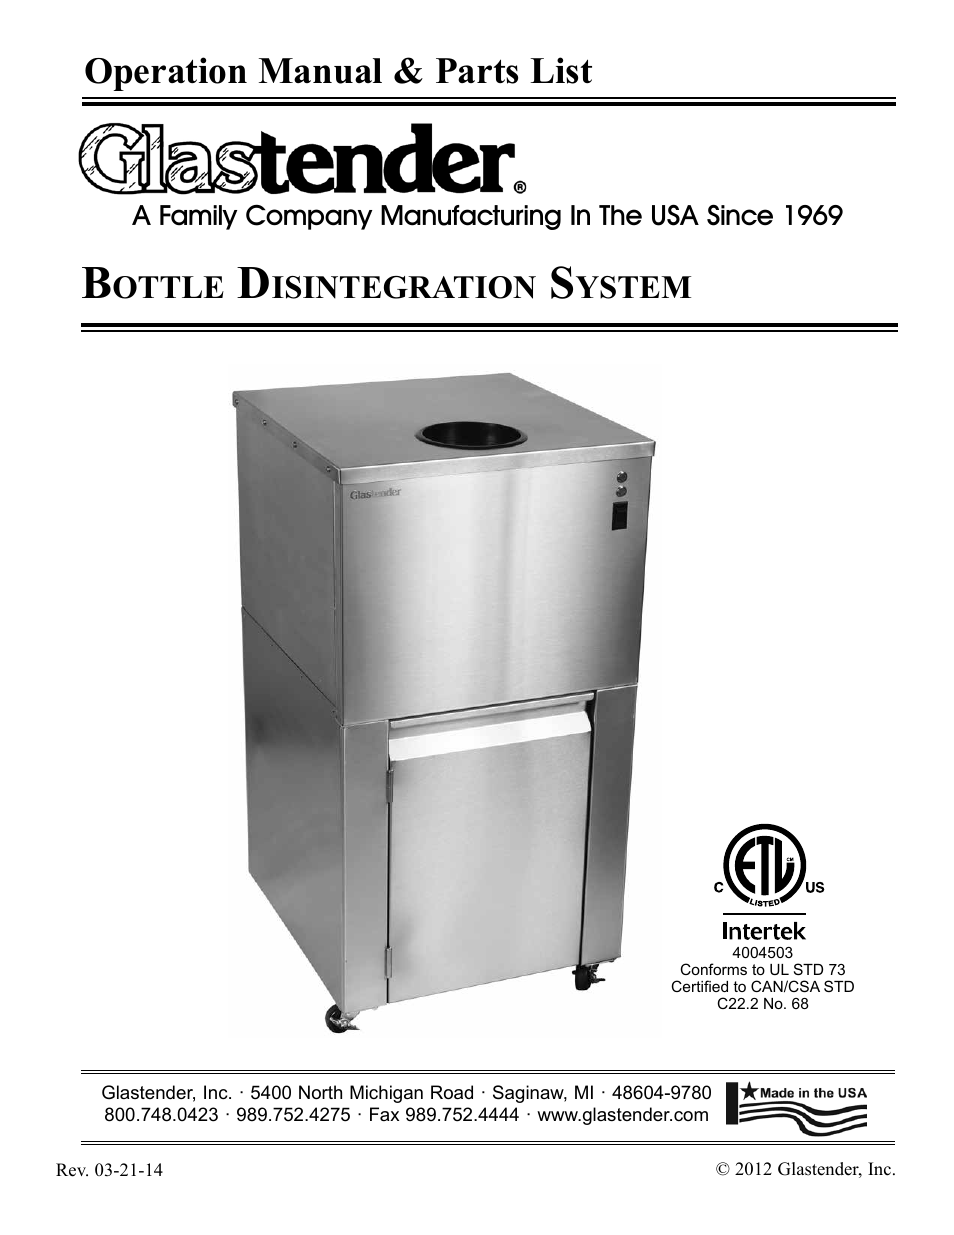 Glastender Bottle Disintegration System User Manual | 13 pages